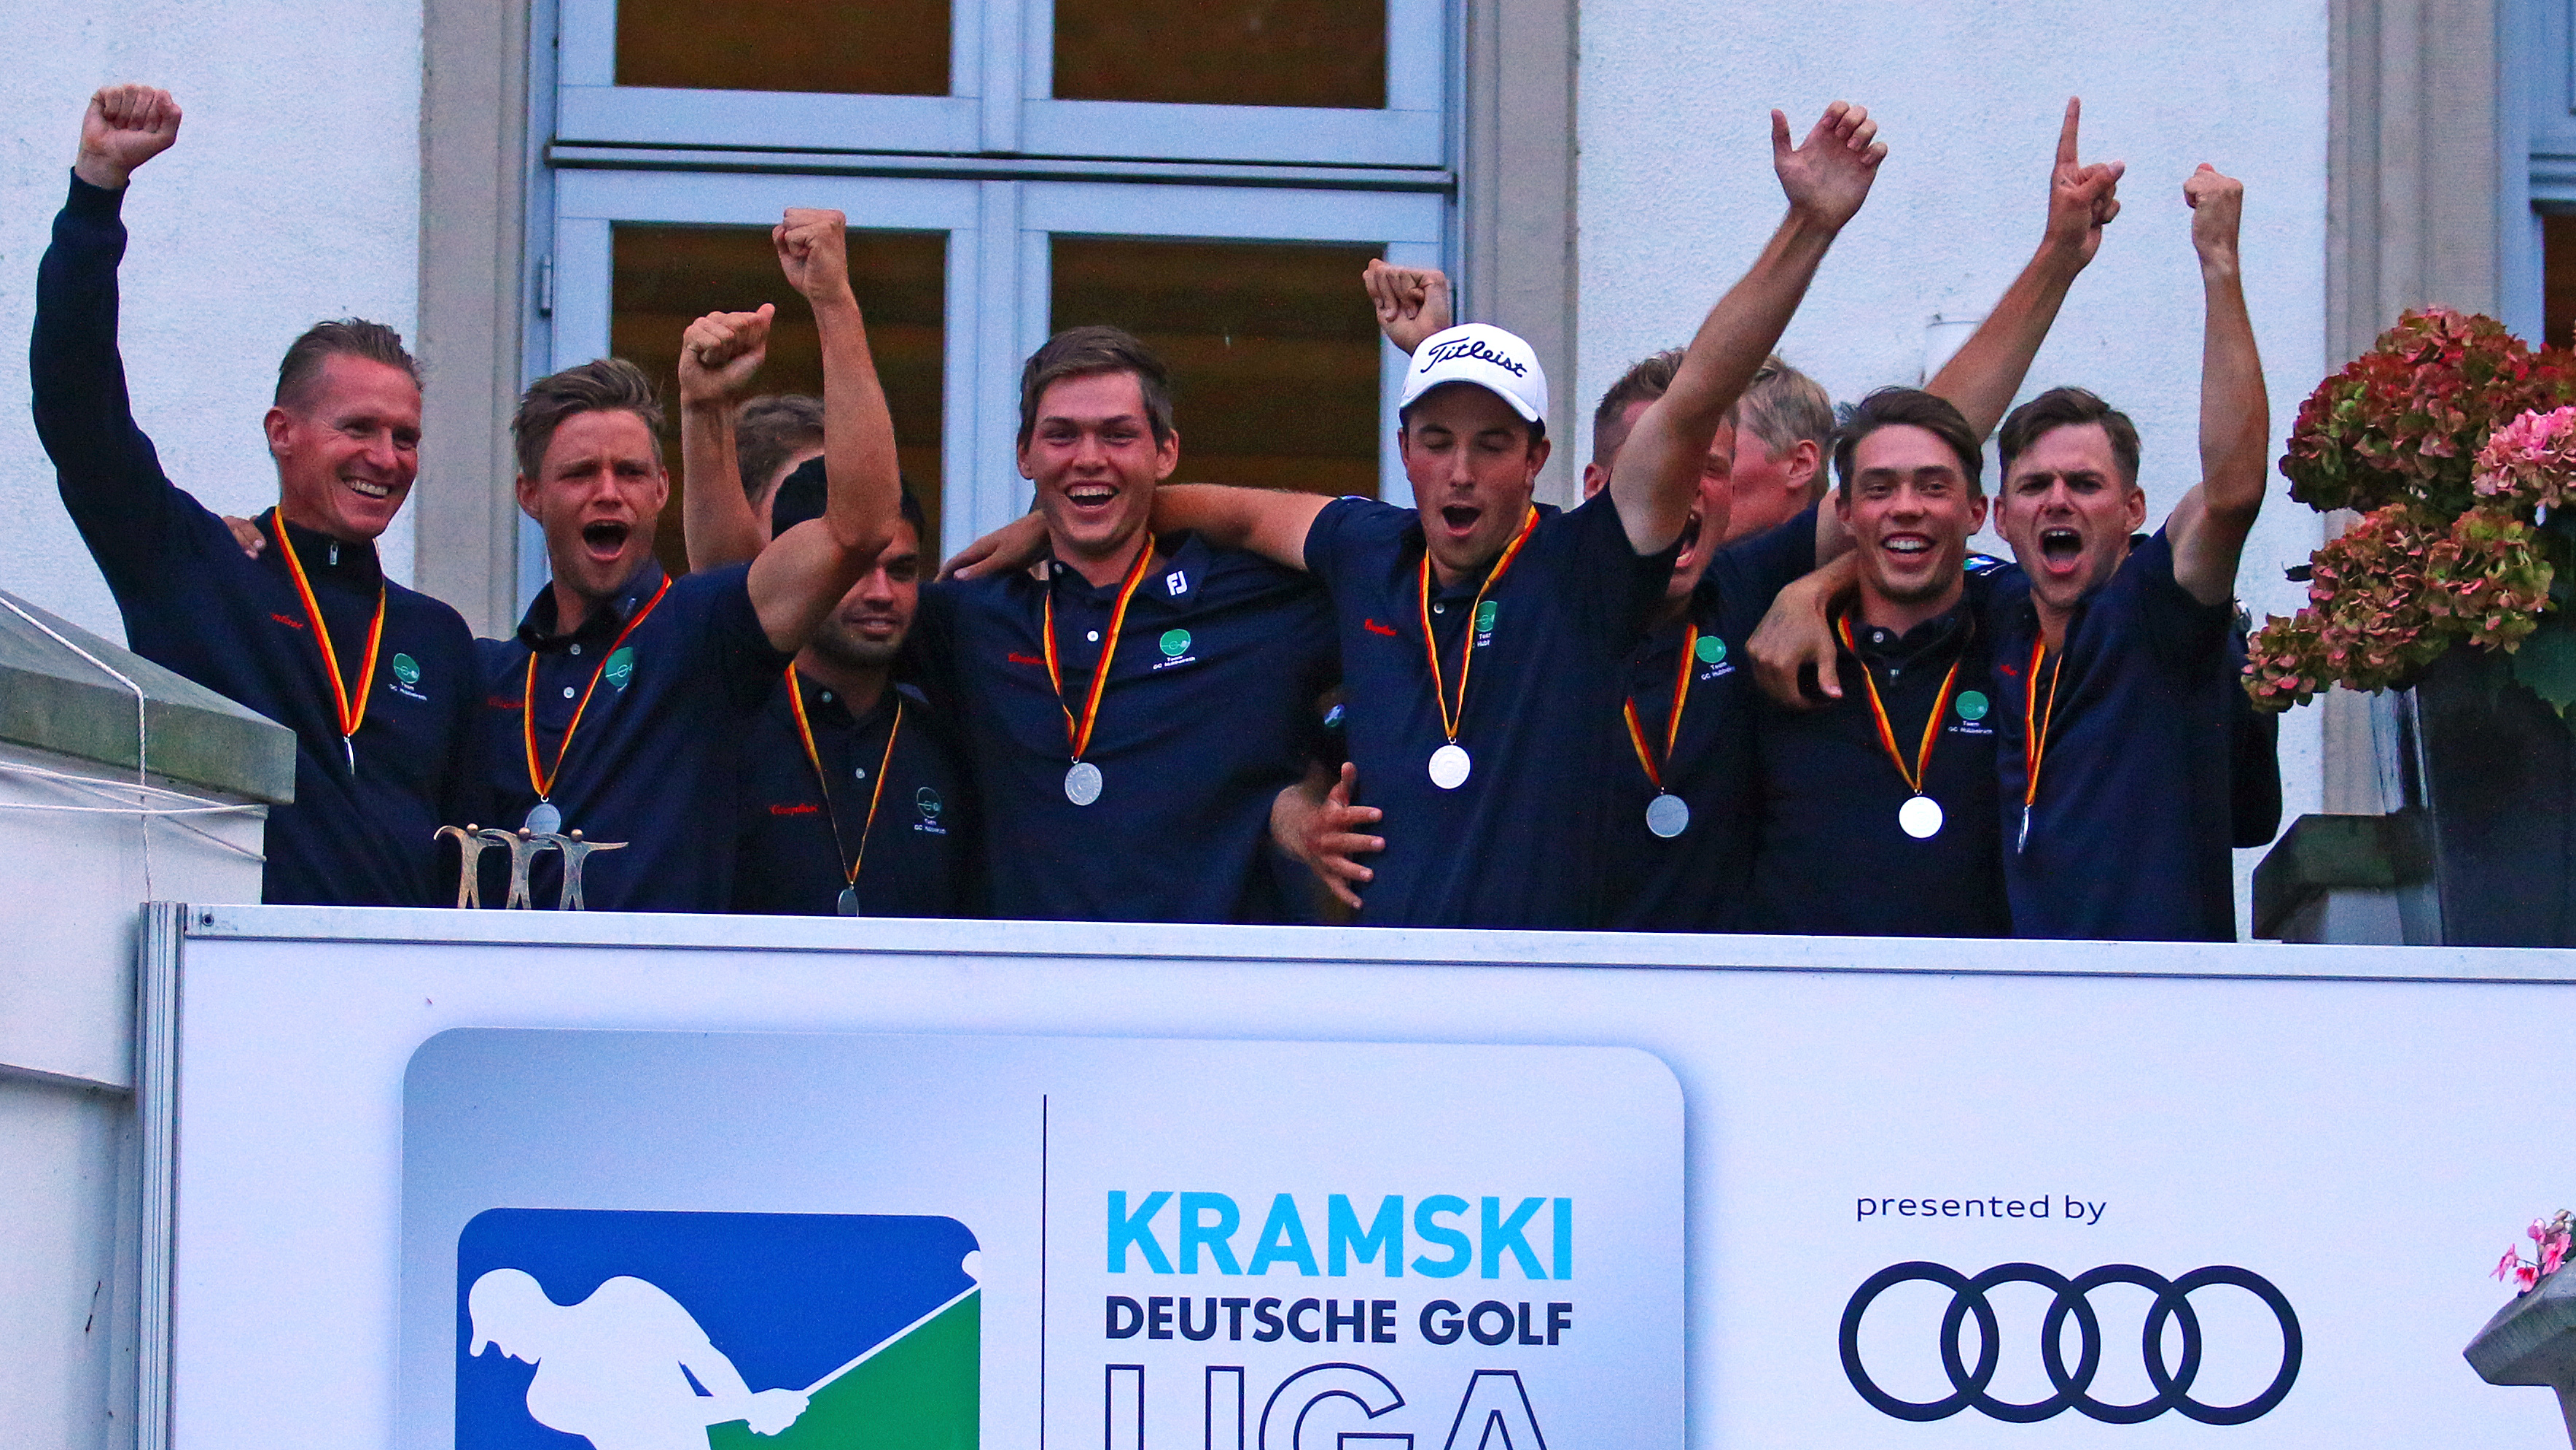 Die Herren des GC Hubbelrath sichern sich die Silbermedaille. (Foto: DGV/stebl) | © (Foto: DGV/stebl)